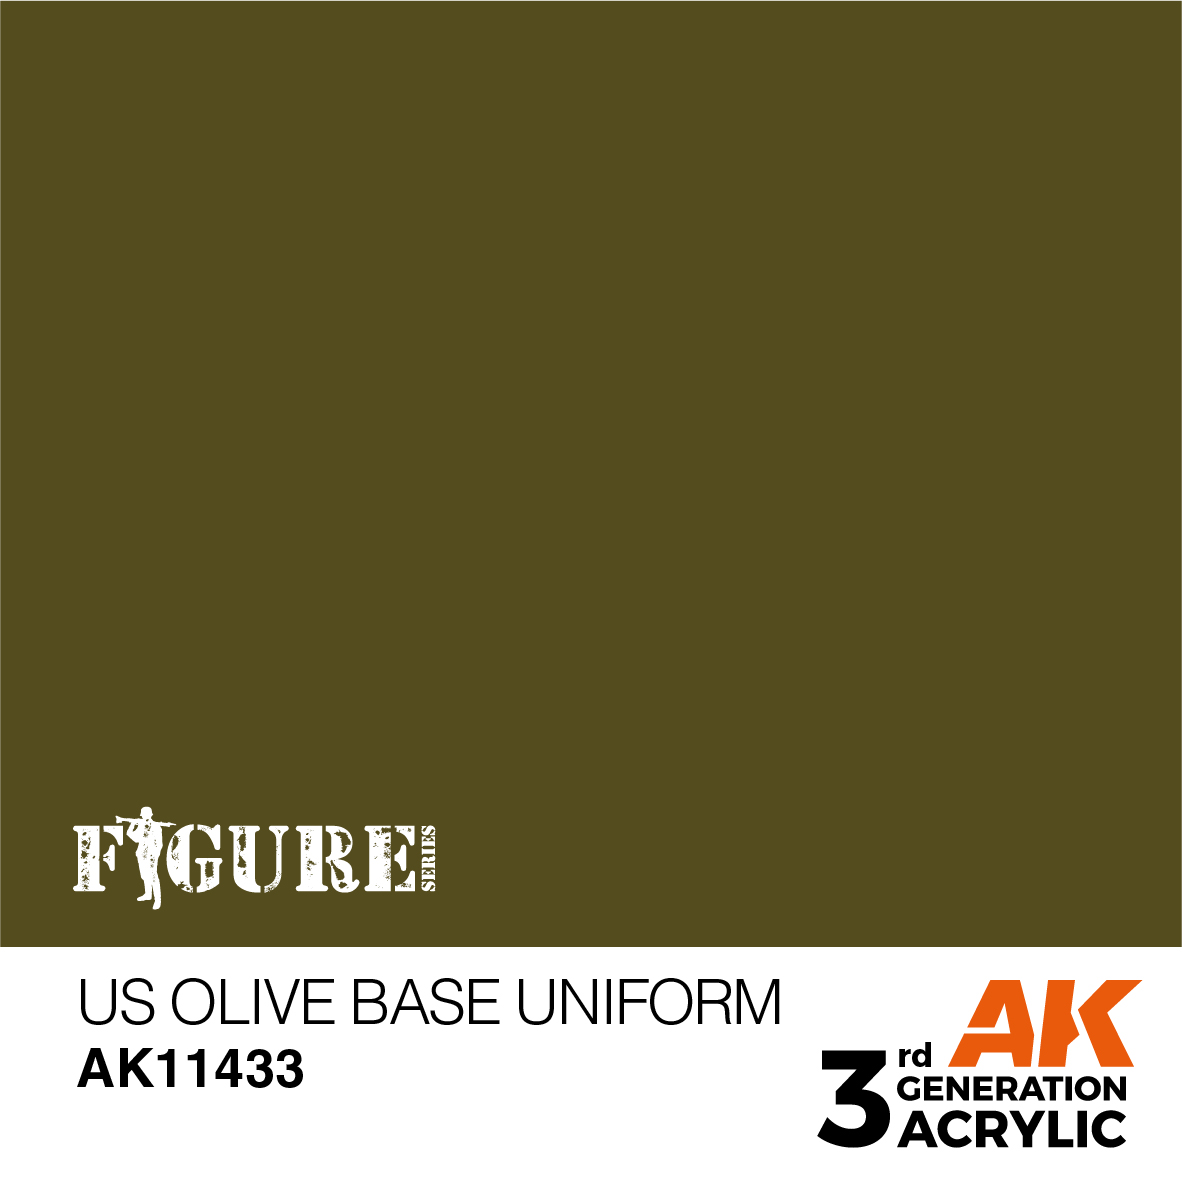 US Olive Base Uniform – Figures